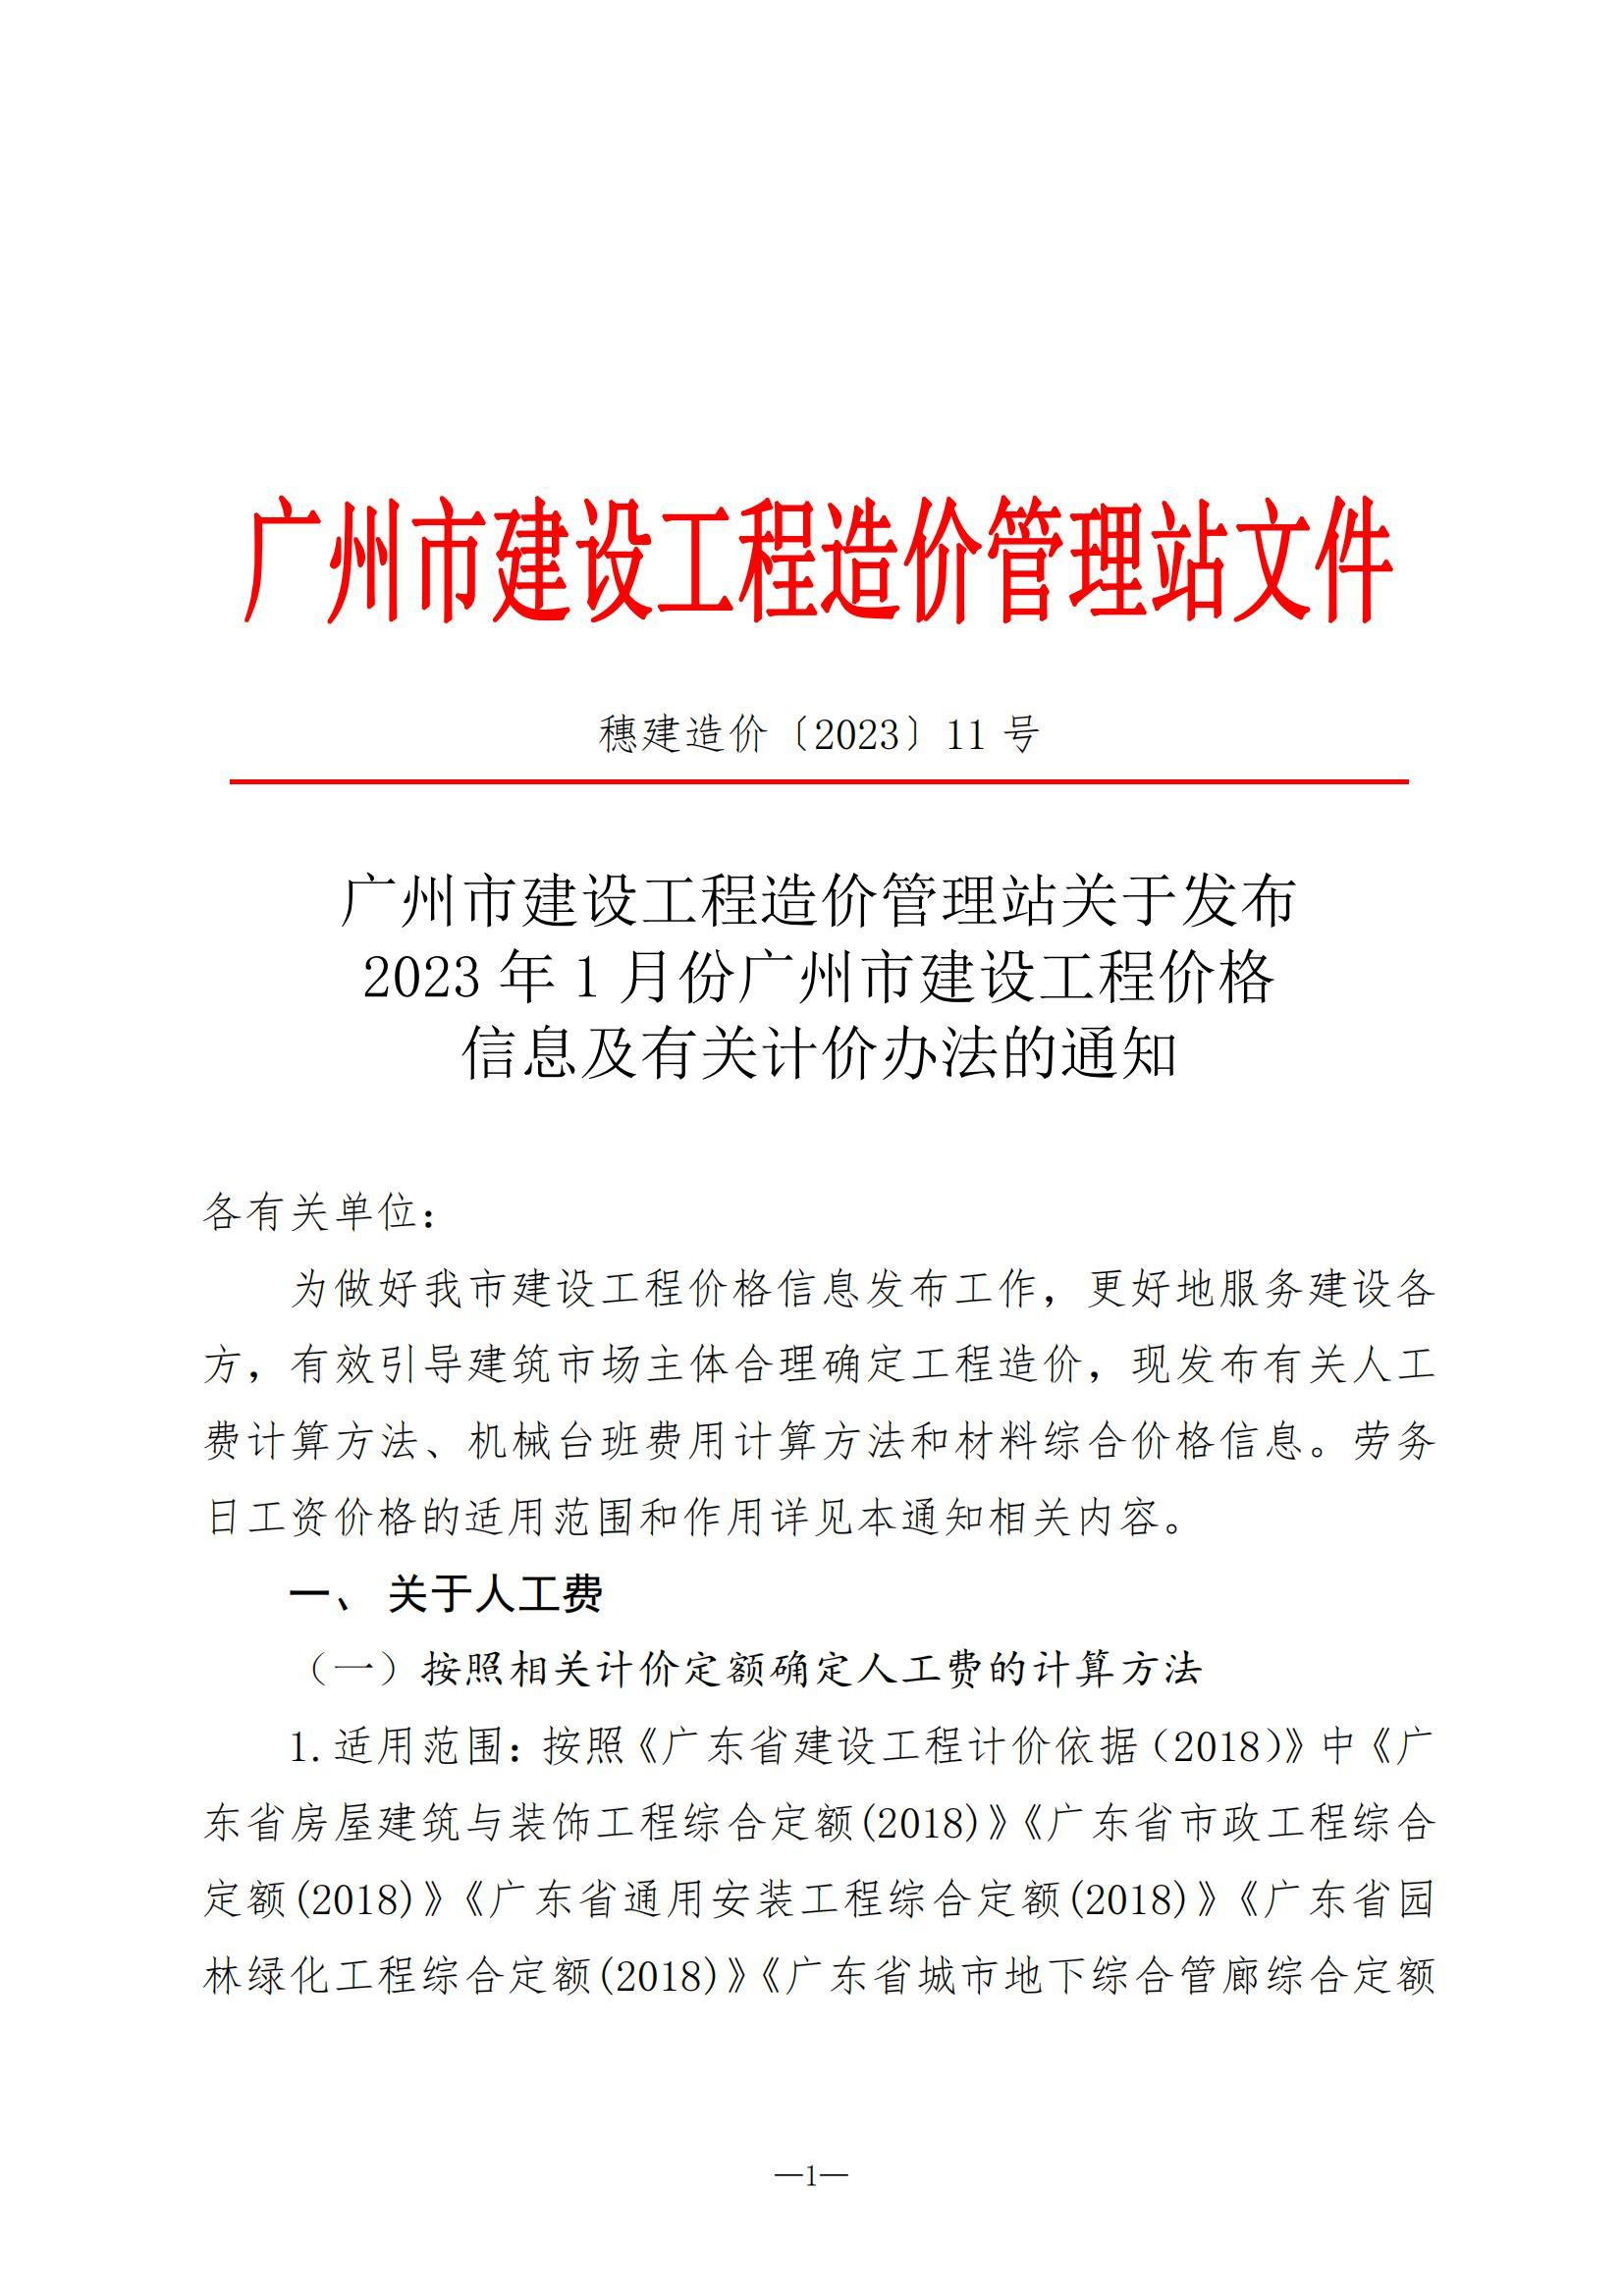 【转】关于发布2023年1月份广州市建设工程价格信息及有关计价办法的通知(穗建造价[2023]11号)-1